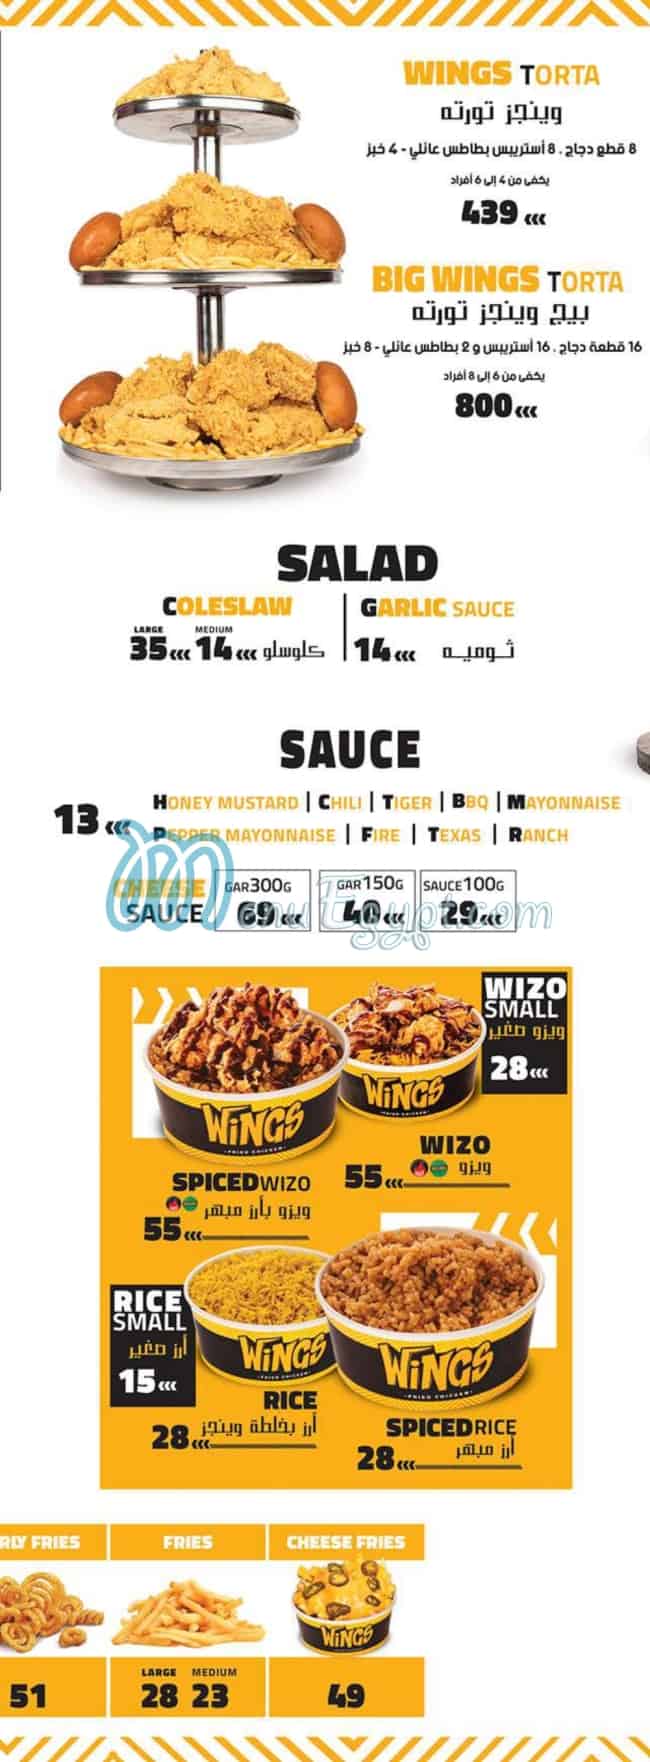 Wings menu prices